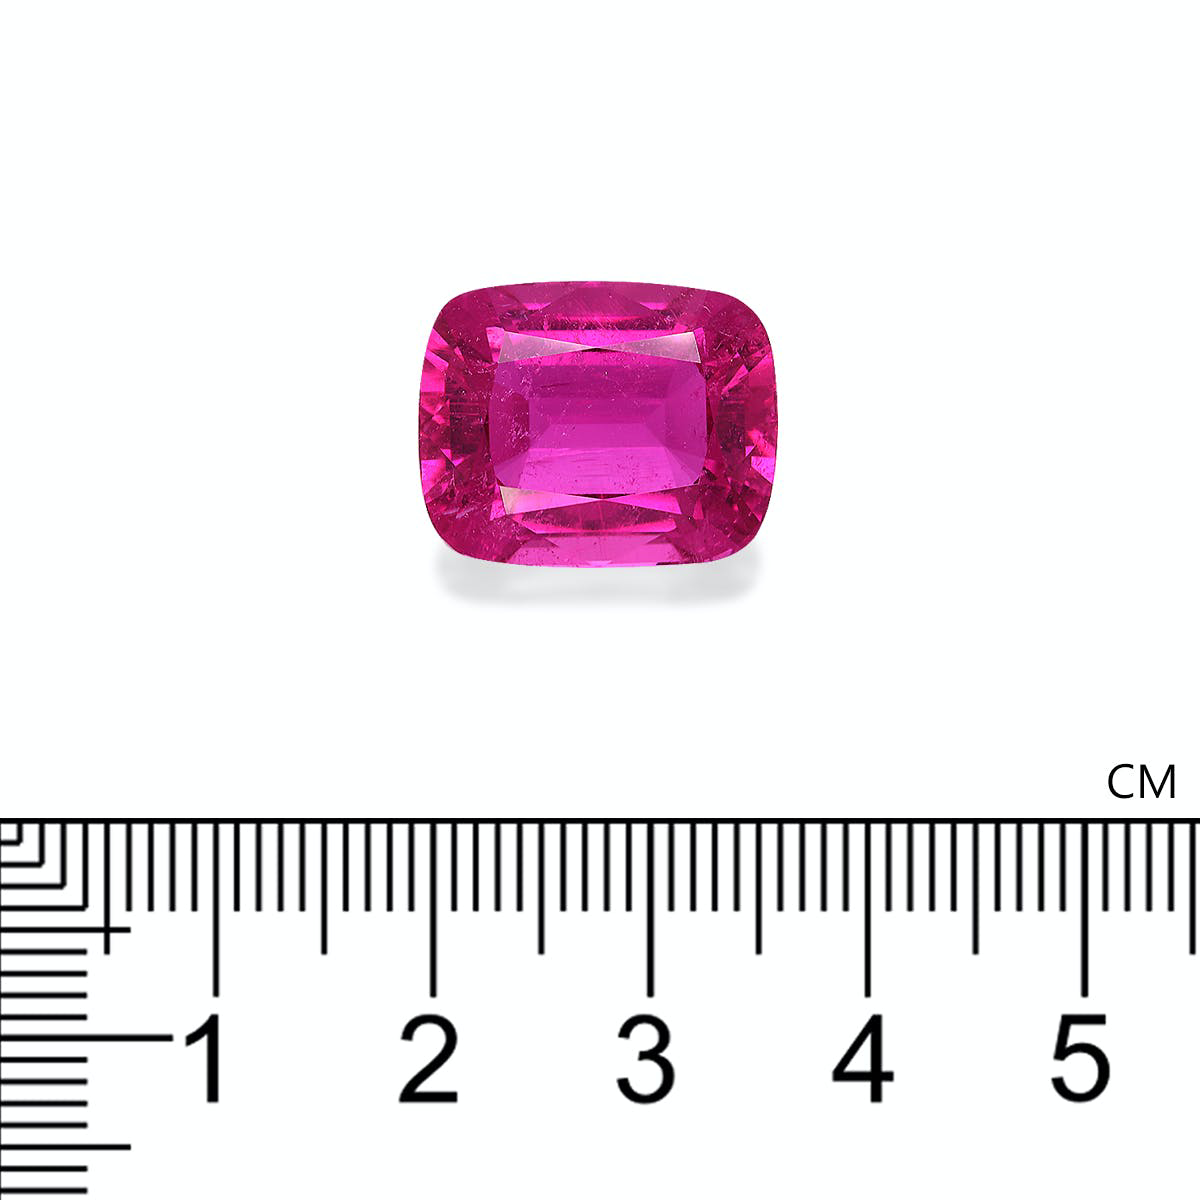 Vivid Pink Rubellite Tourmaline 19.07ct (RL1186)